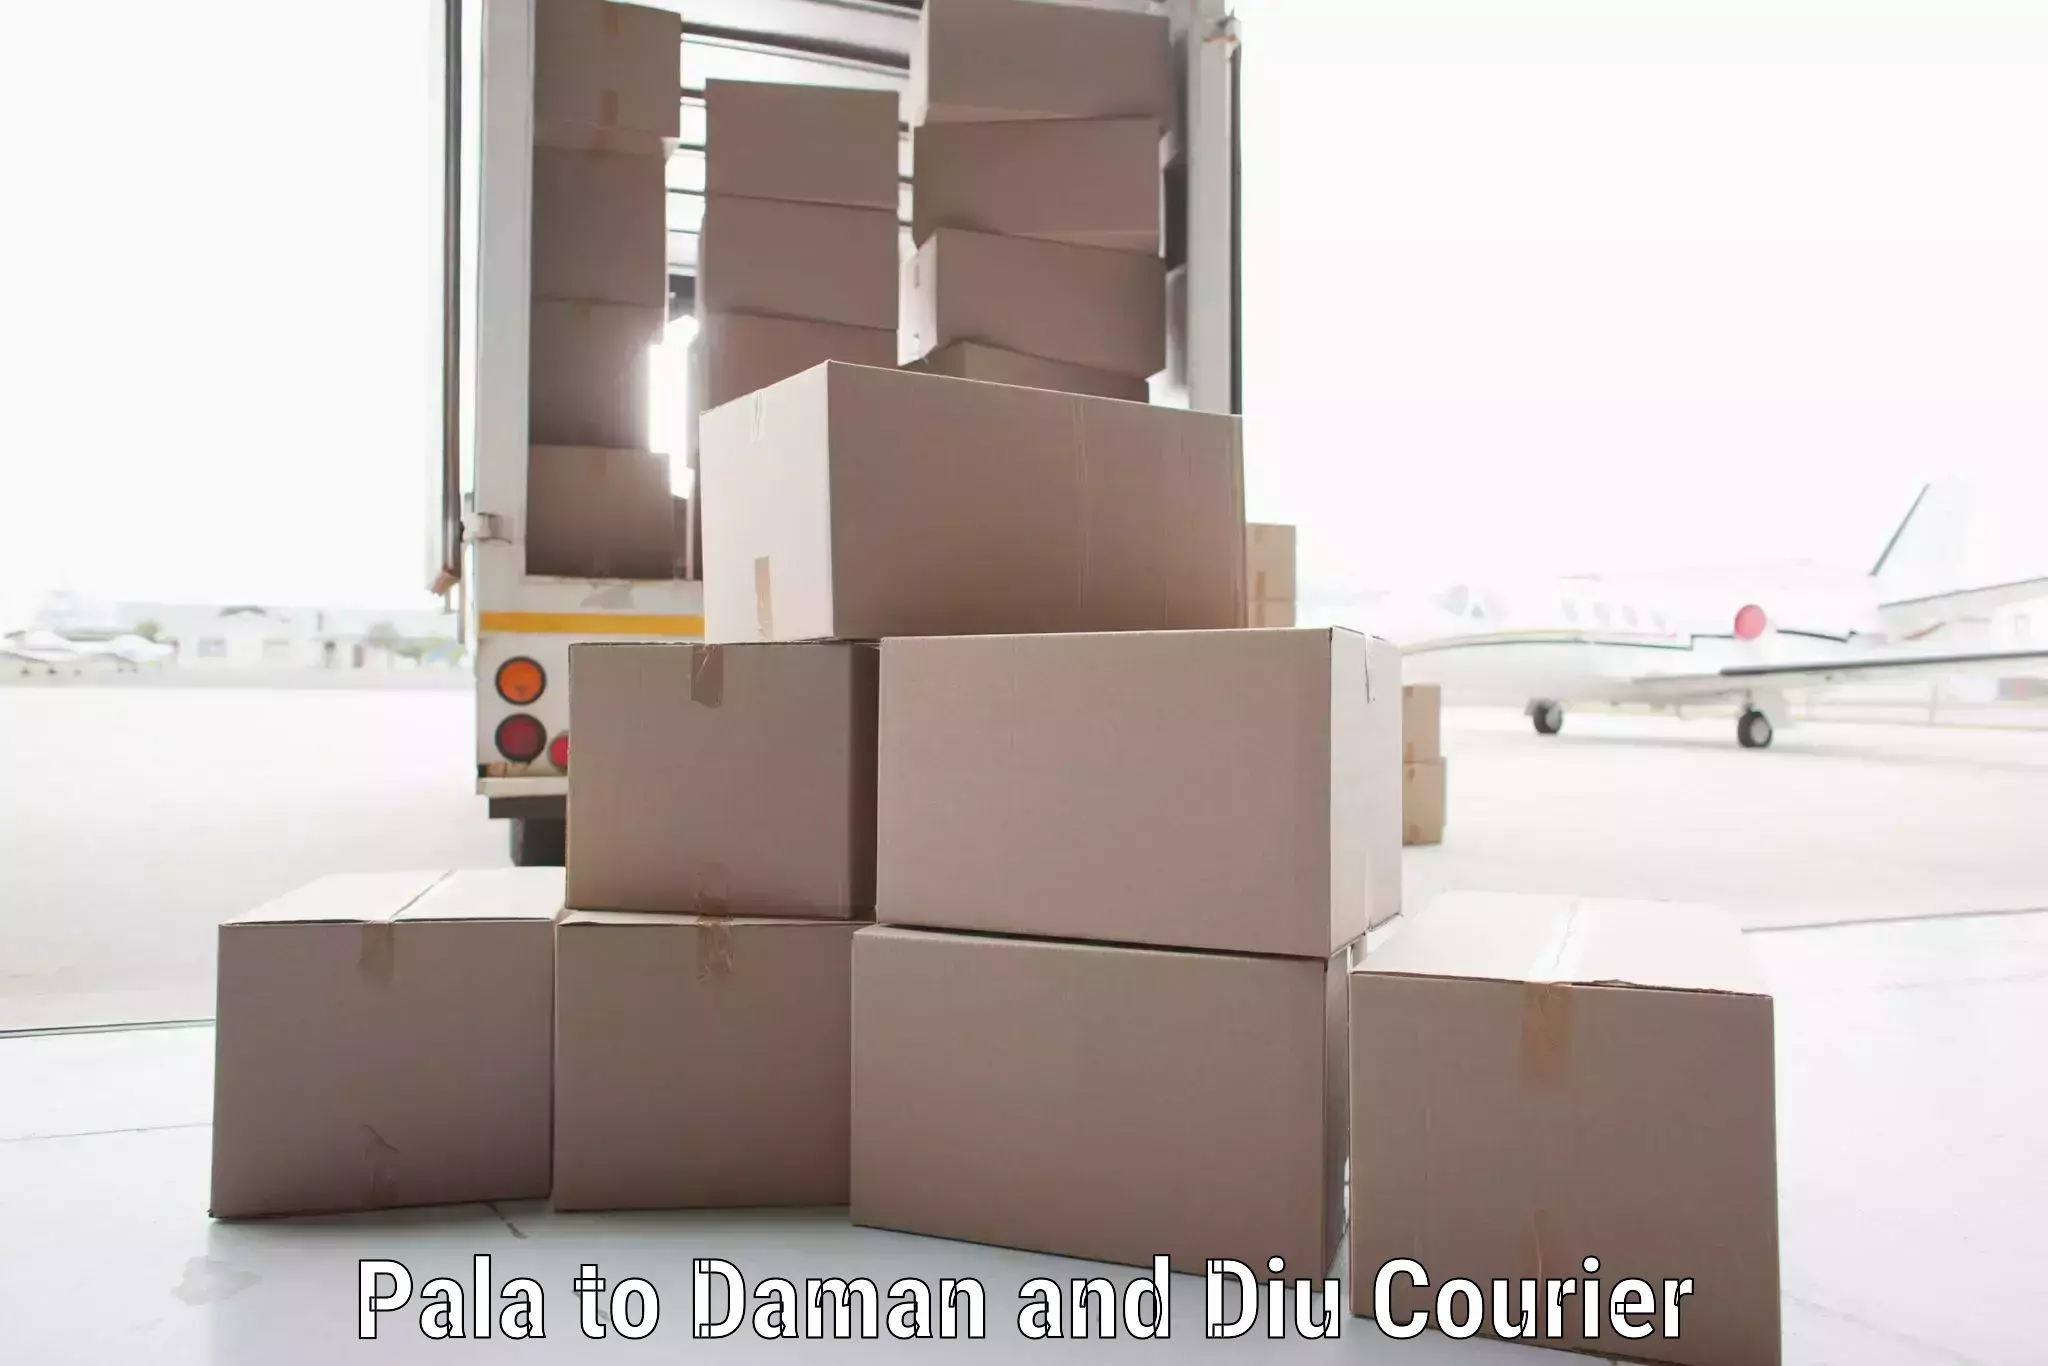 Efficient freight transportation Pala to Daman and Diu